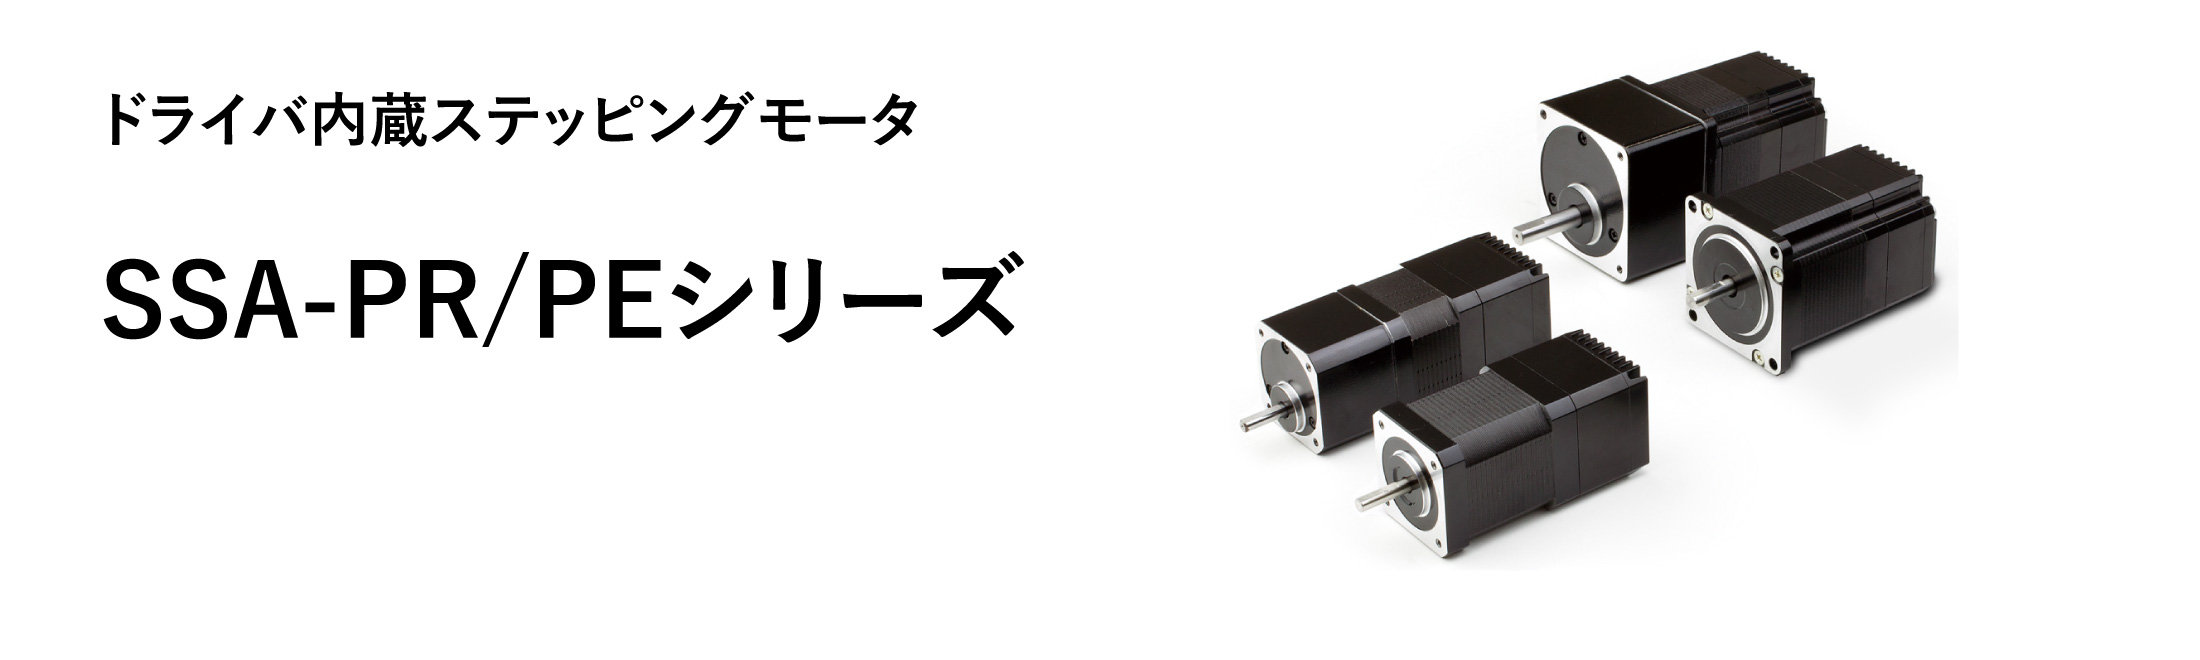 シナノケンシ SSA-PR-56D1 ドライバ内蔵モデルステッピングモーター 片軸タイプ(取付56.4mm)